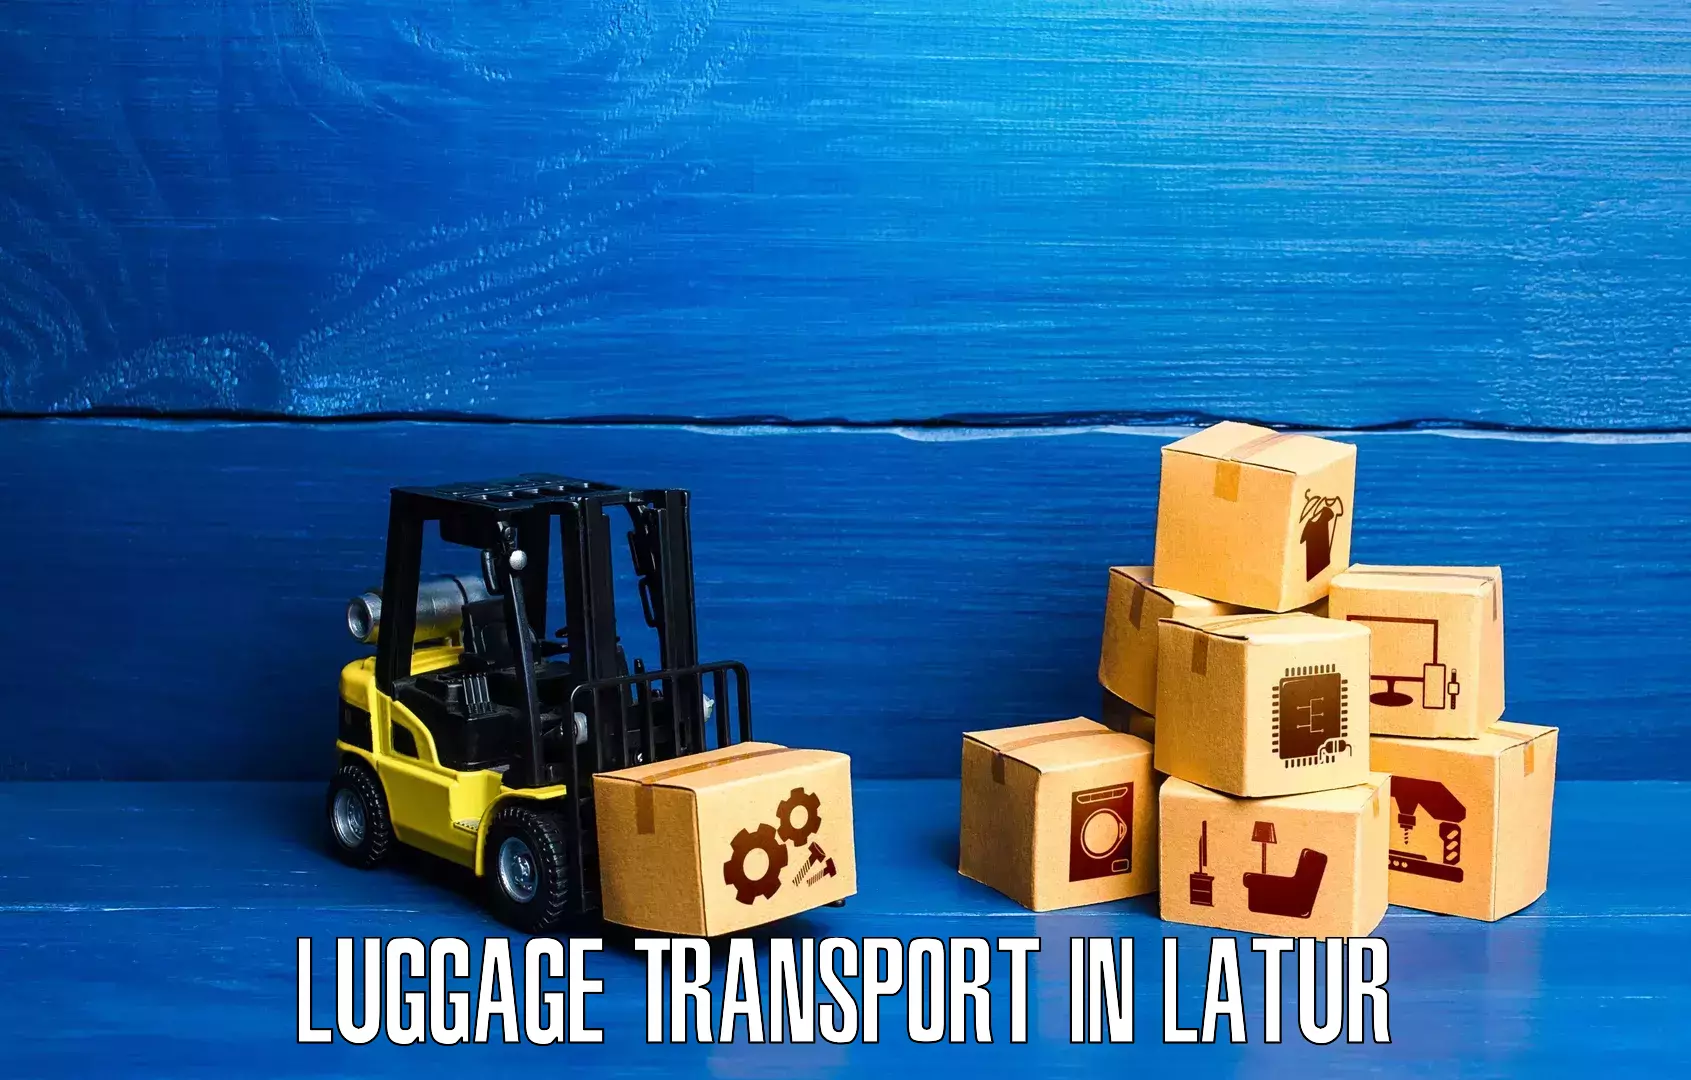 Rural baggage transport in Latur